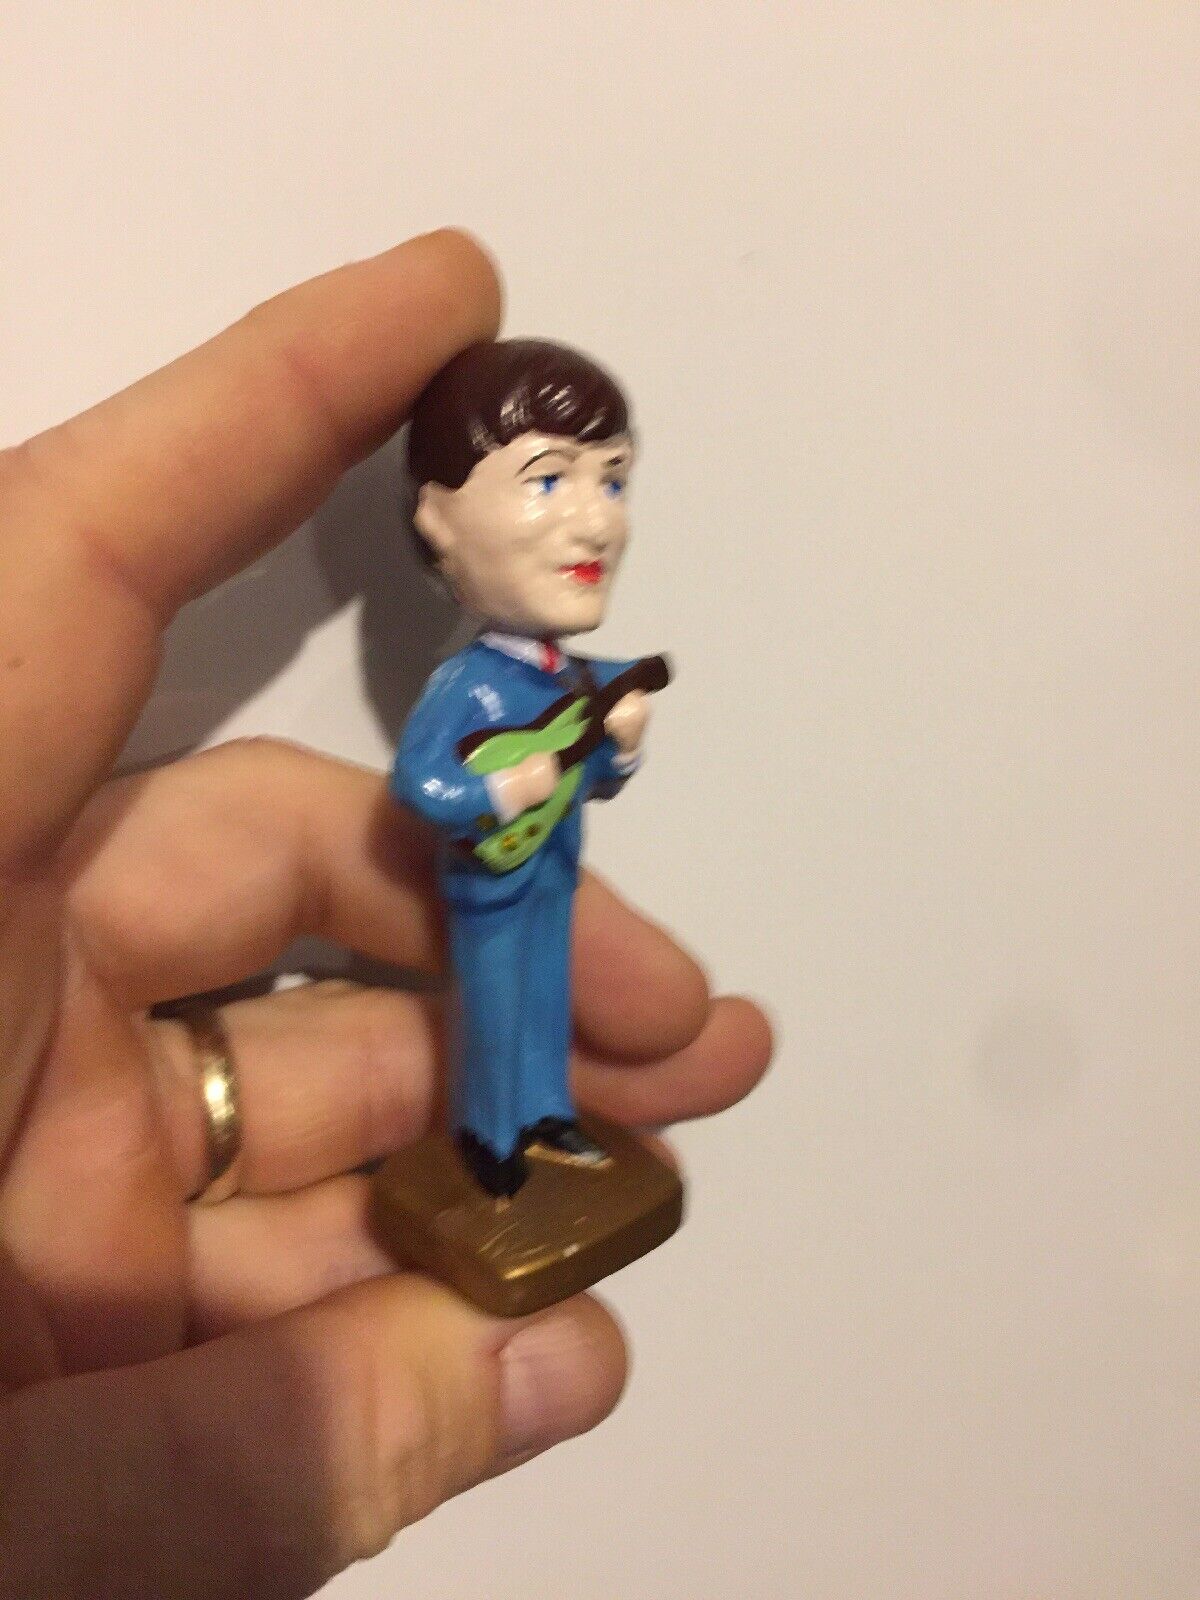 Beatles Figure John Lennon Paul McCartney Rock Band Elvis Music Figurine GIFT